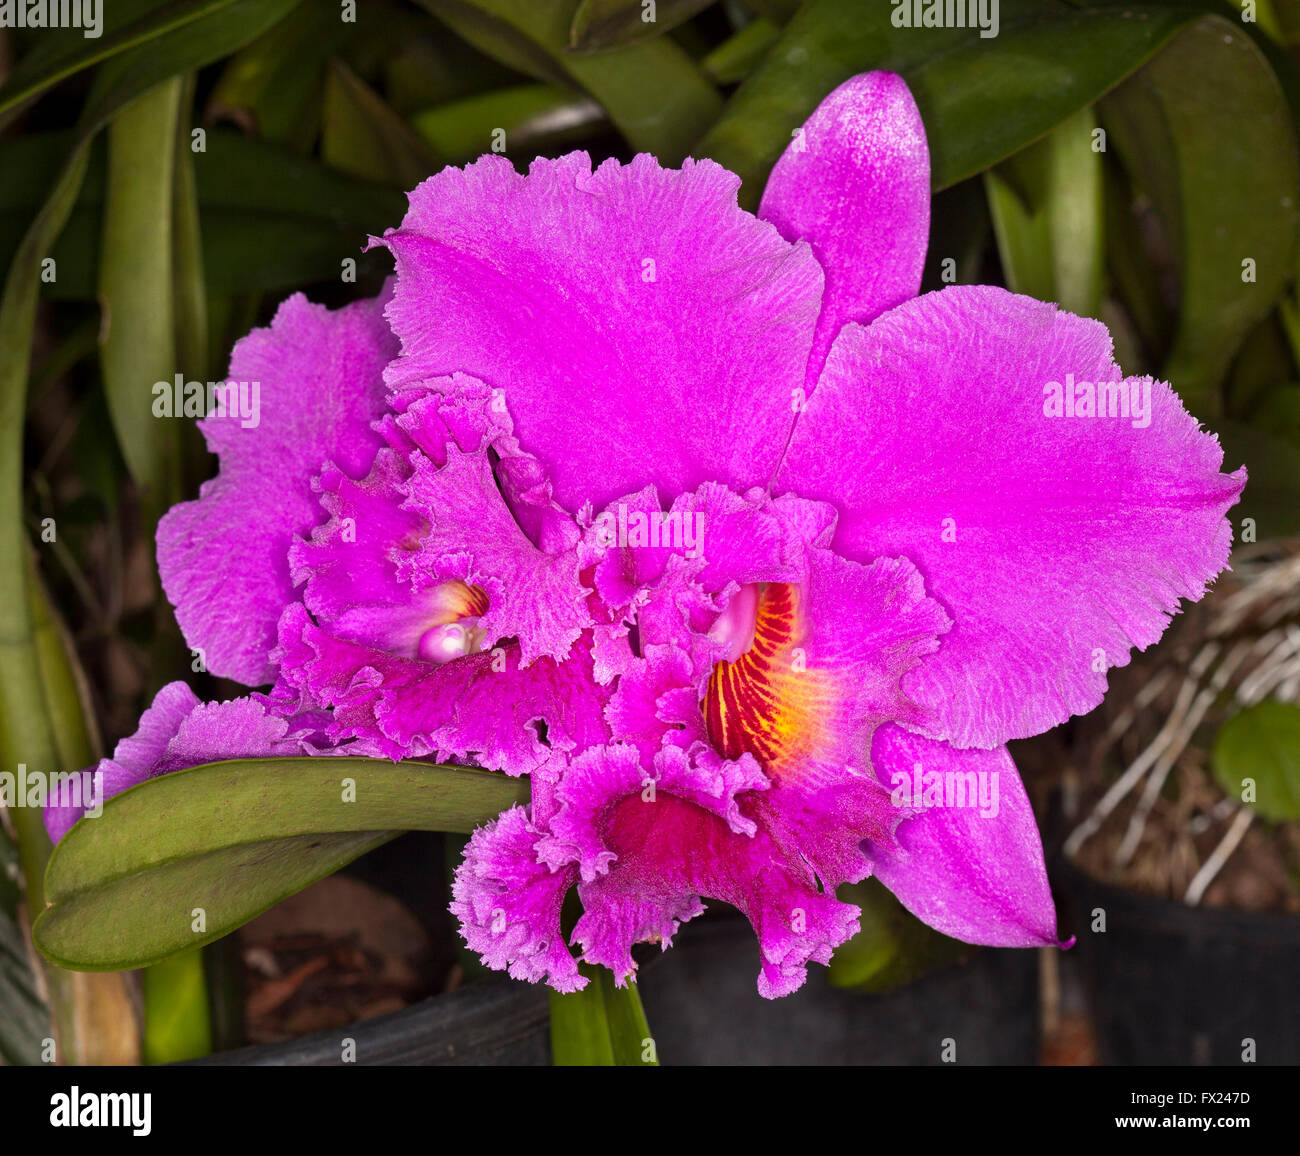 Grand spectaculaire magenta vif rose / violet Fleur parfumée d'orchidée Cattleya avec arme à froufrous en pétales sur fond sombre Banque D'Images